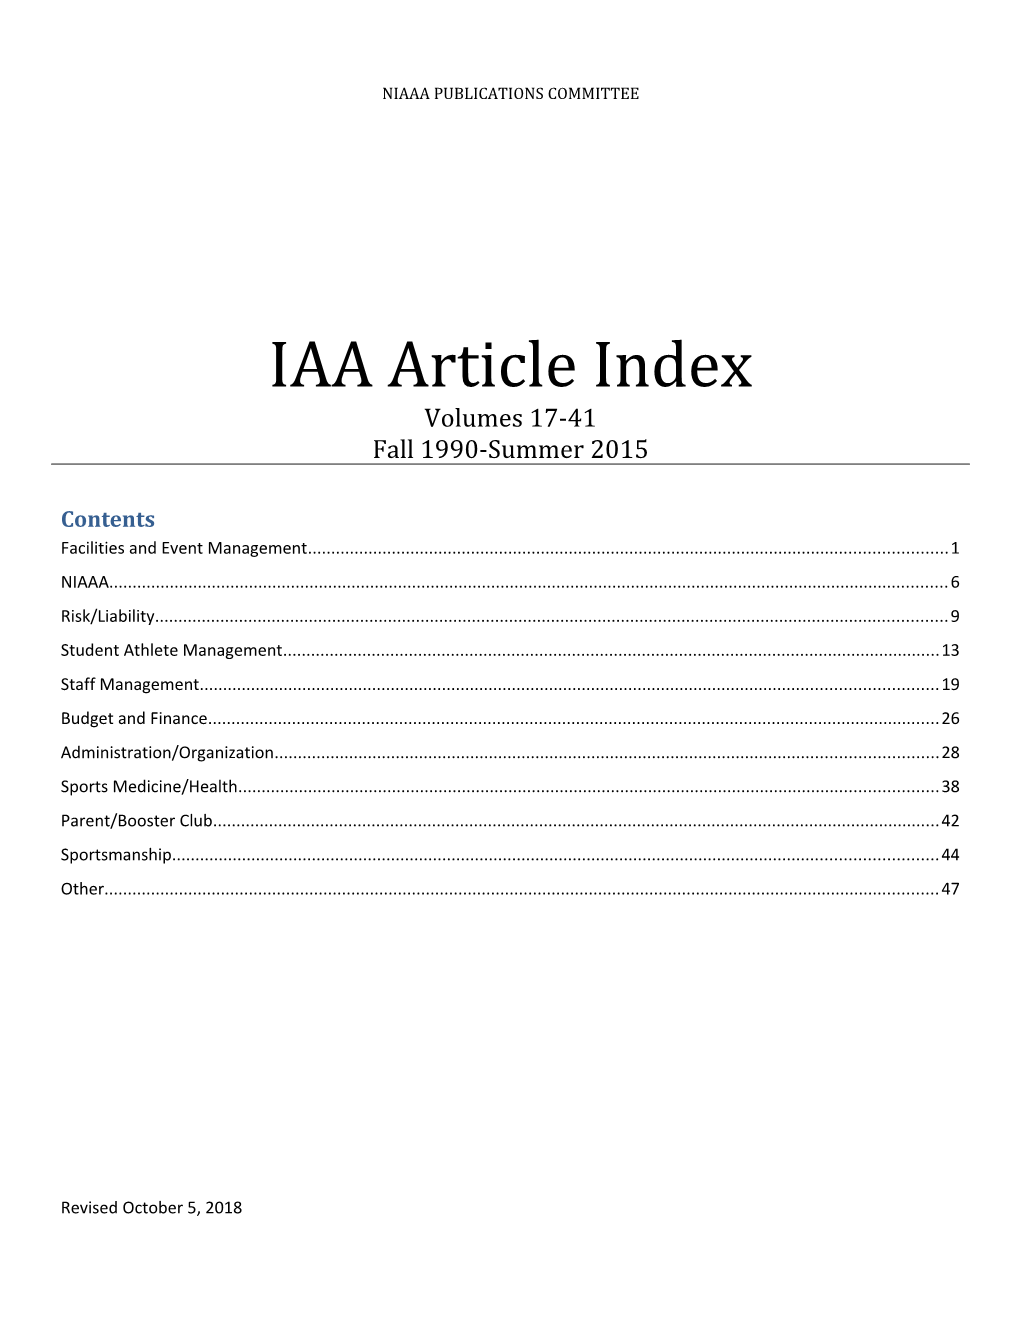 IAA Article Index